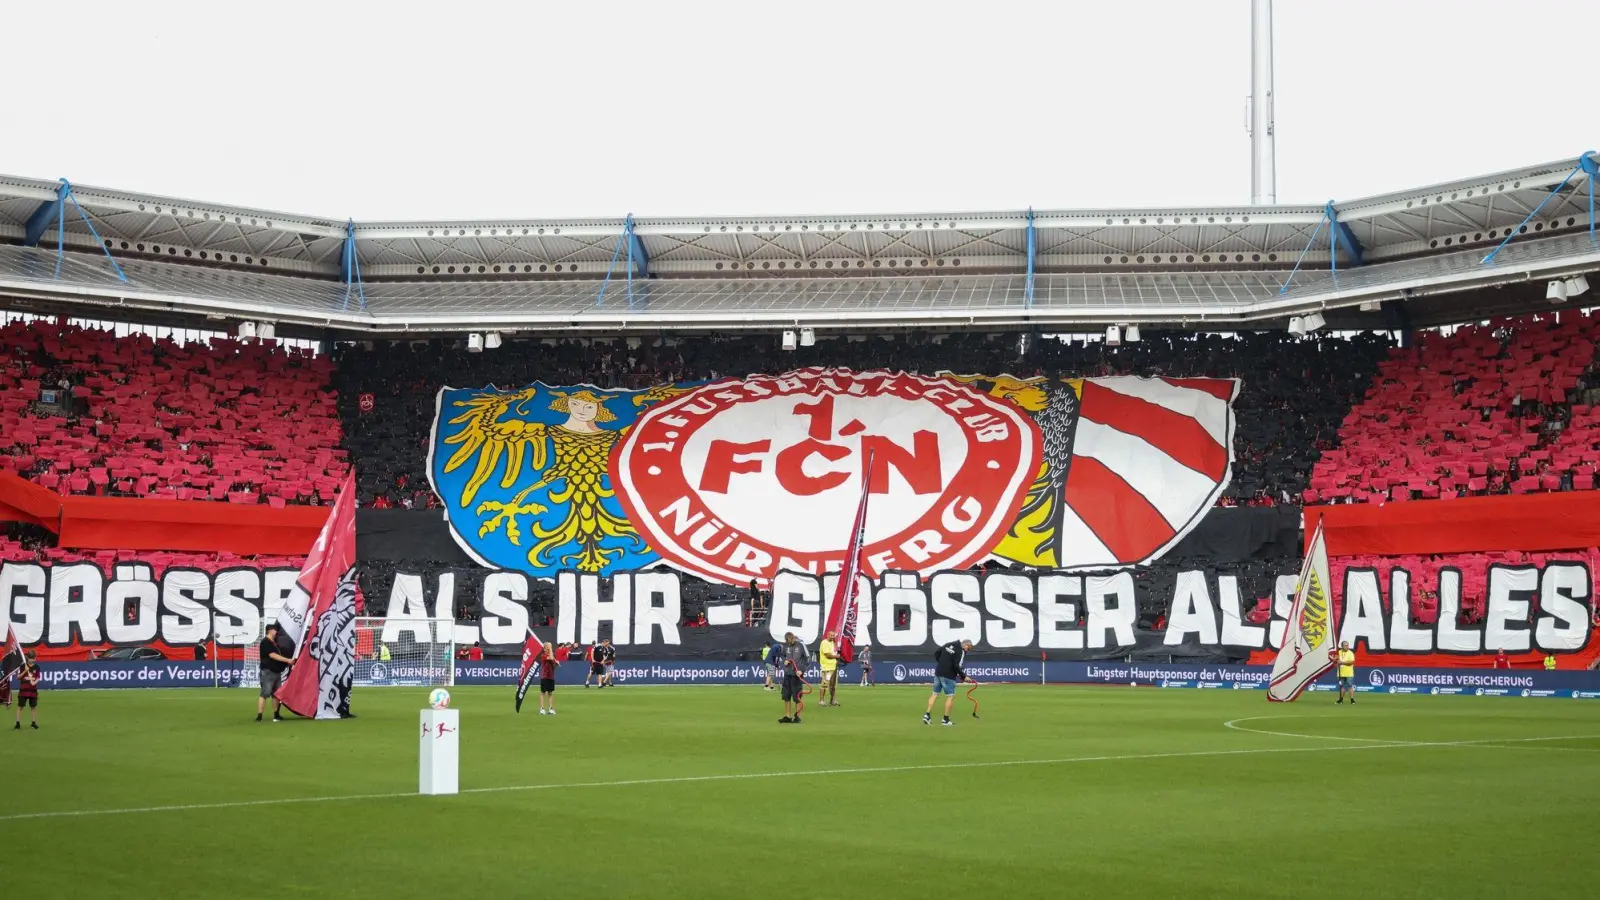 Die Stadt Nürnberg will im Stadion das Flutlicht ab 21 Uhr ausschalten. (Foto: Daniel Karmann/dpa)